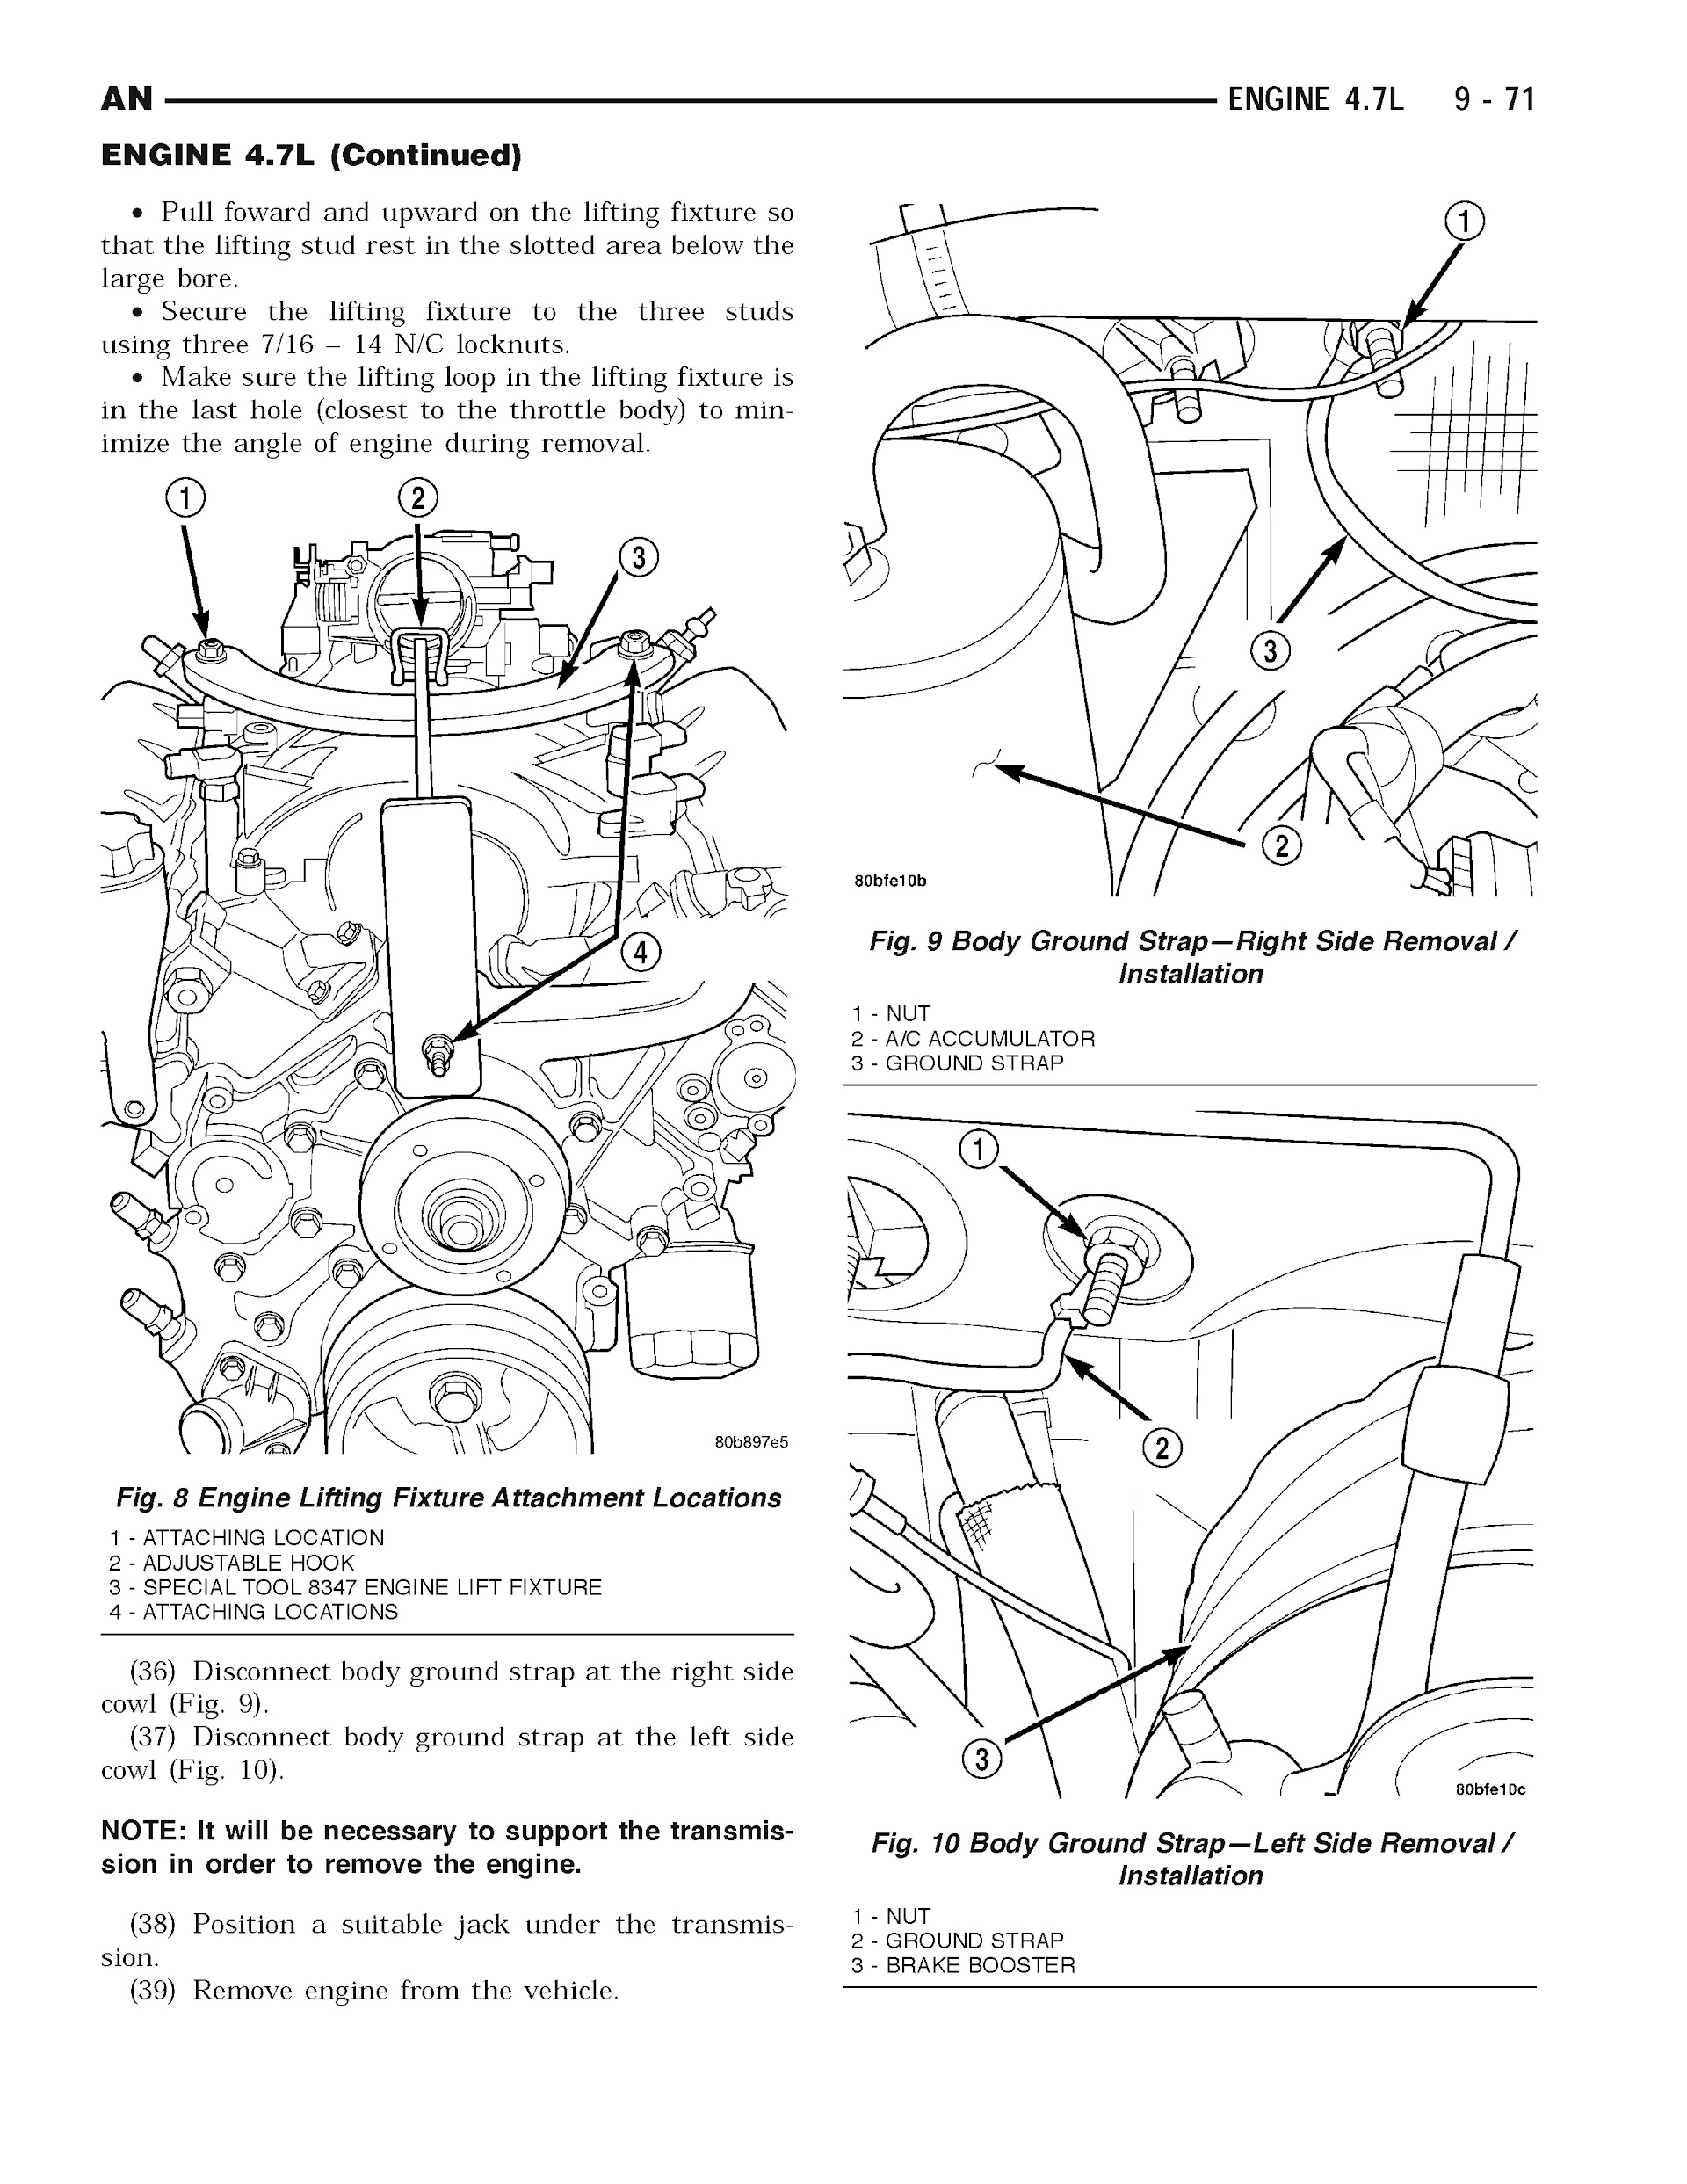 2004 Dodge Dakota Repair Manual, Engine 4.7L